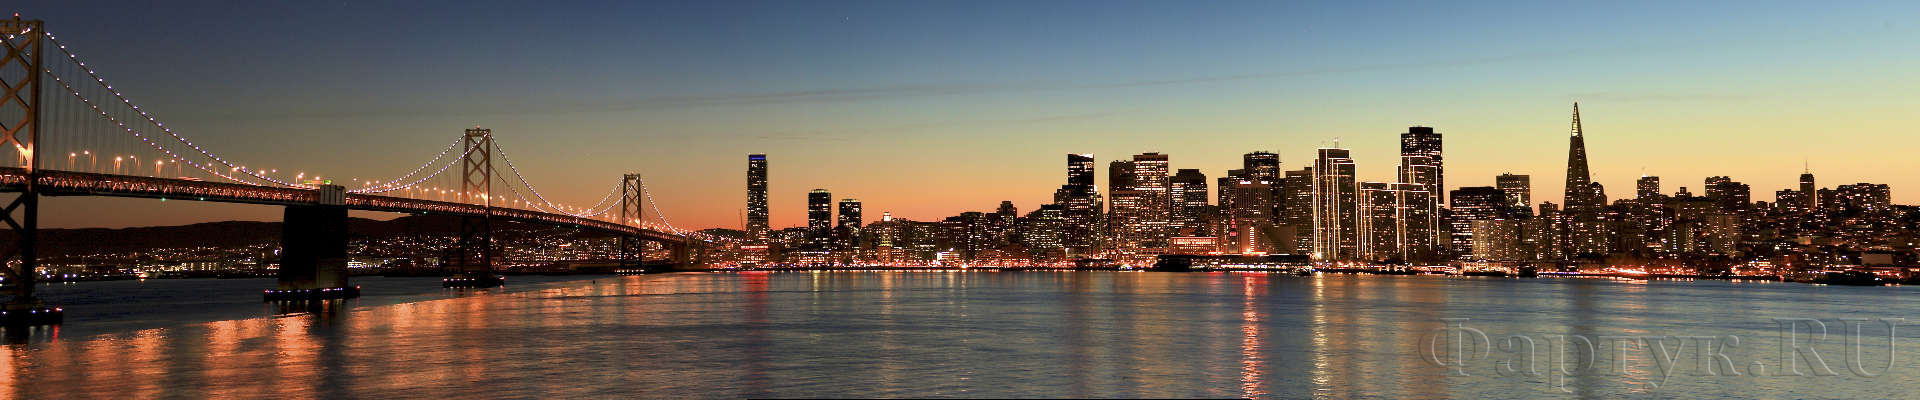 Вечерняя панорама моста, Сан-Франциско